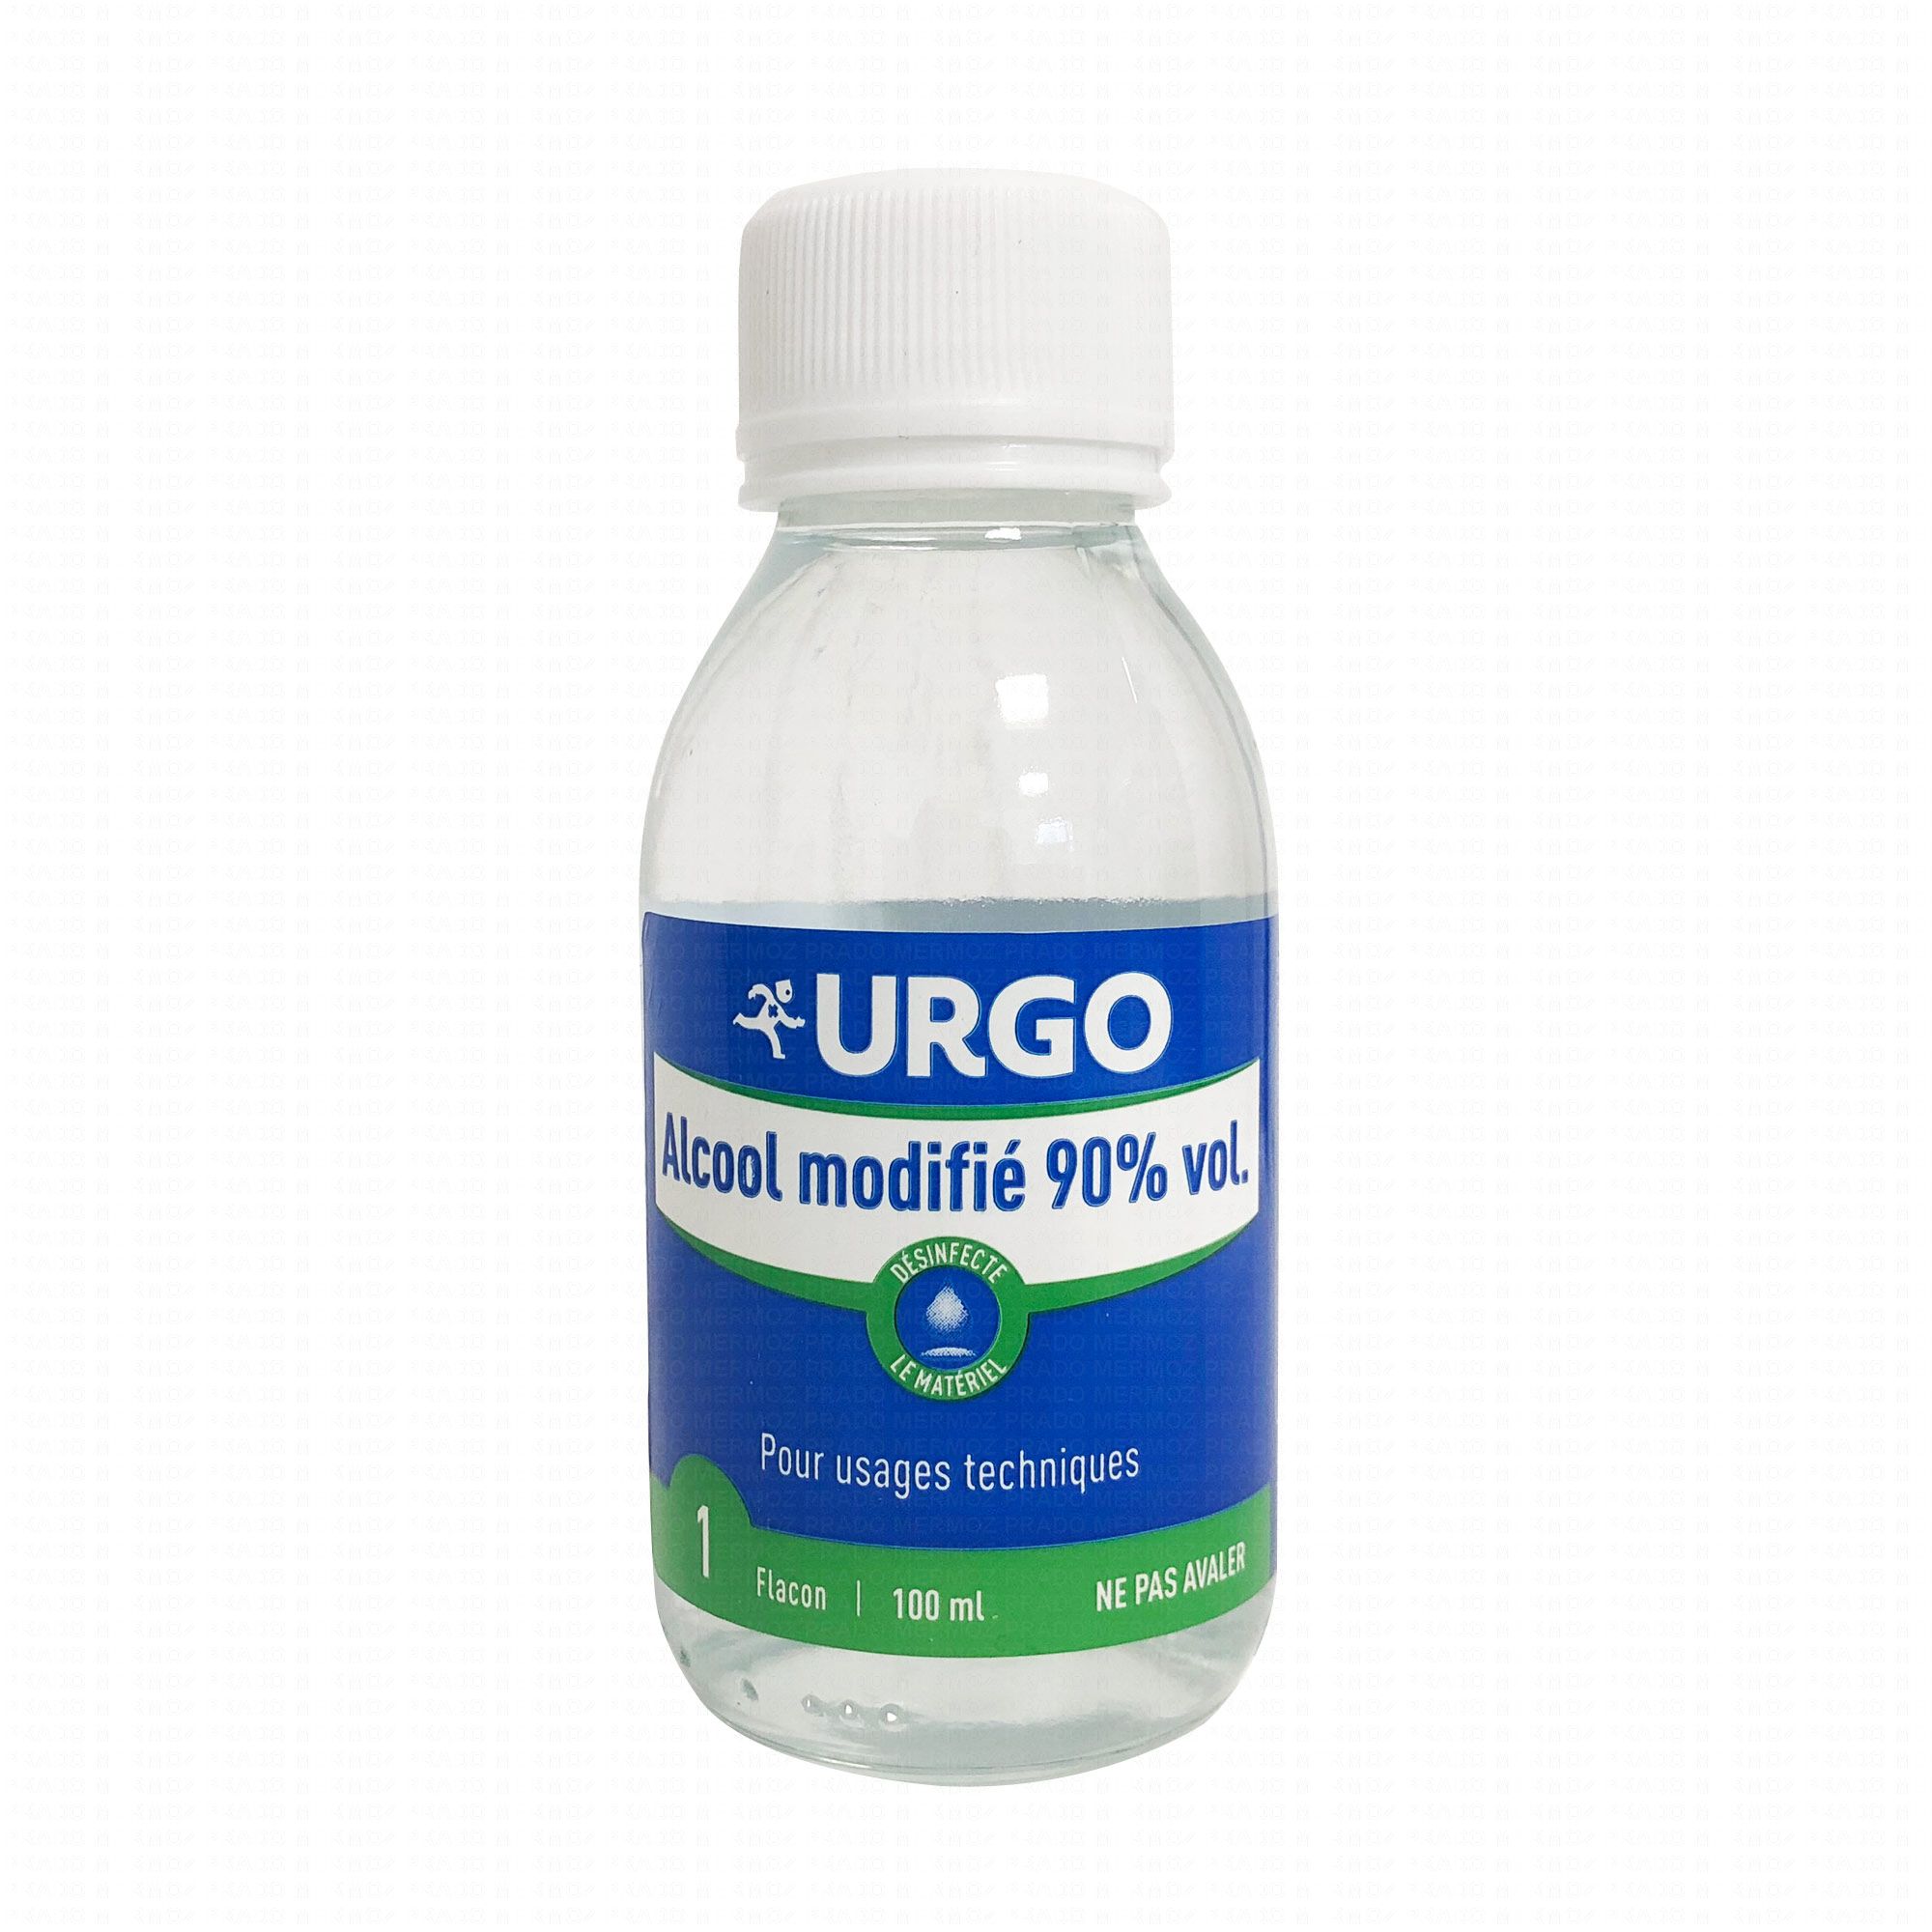 URGO Alcool modifié 90% vol. flacon 100ml - Pharmacie Prado Mermoz